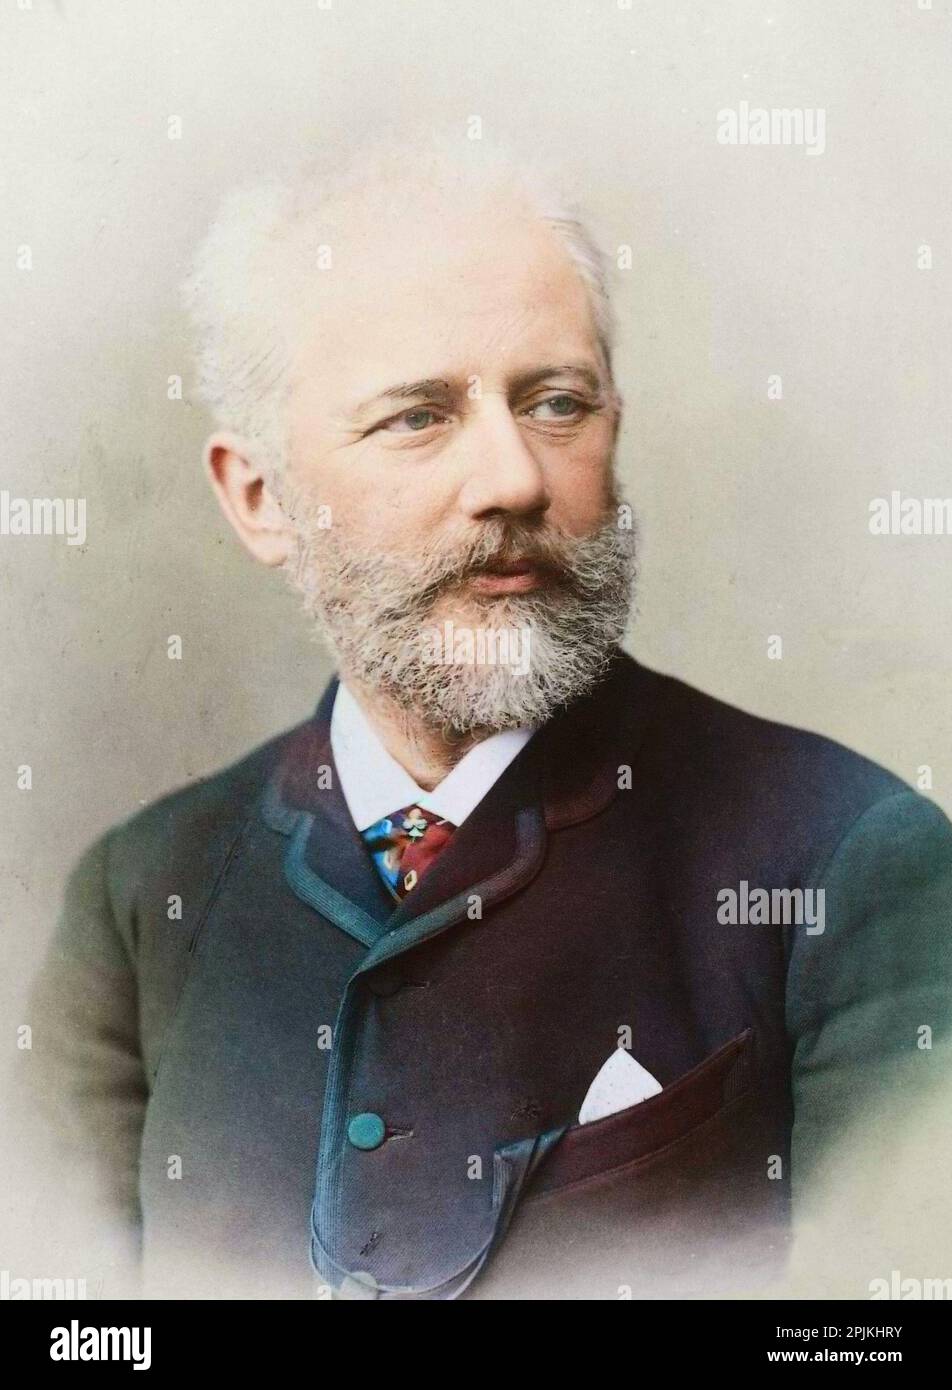 Porträt des Komponisten Pjotr Tschaikowsky (Piotr Petr Ilitch Tschaikowski, Tschaikowski) (1840-1893). Vers. 1888. Photo Colorié ultérieurement Stockfoto